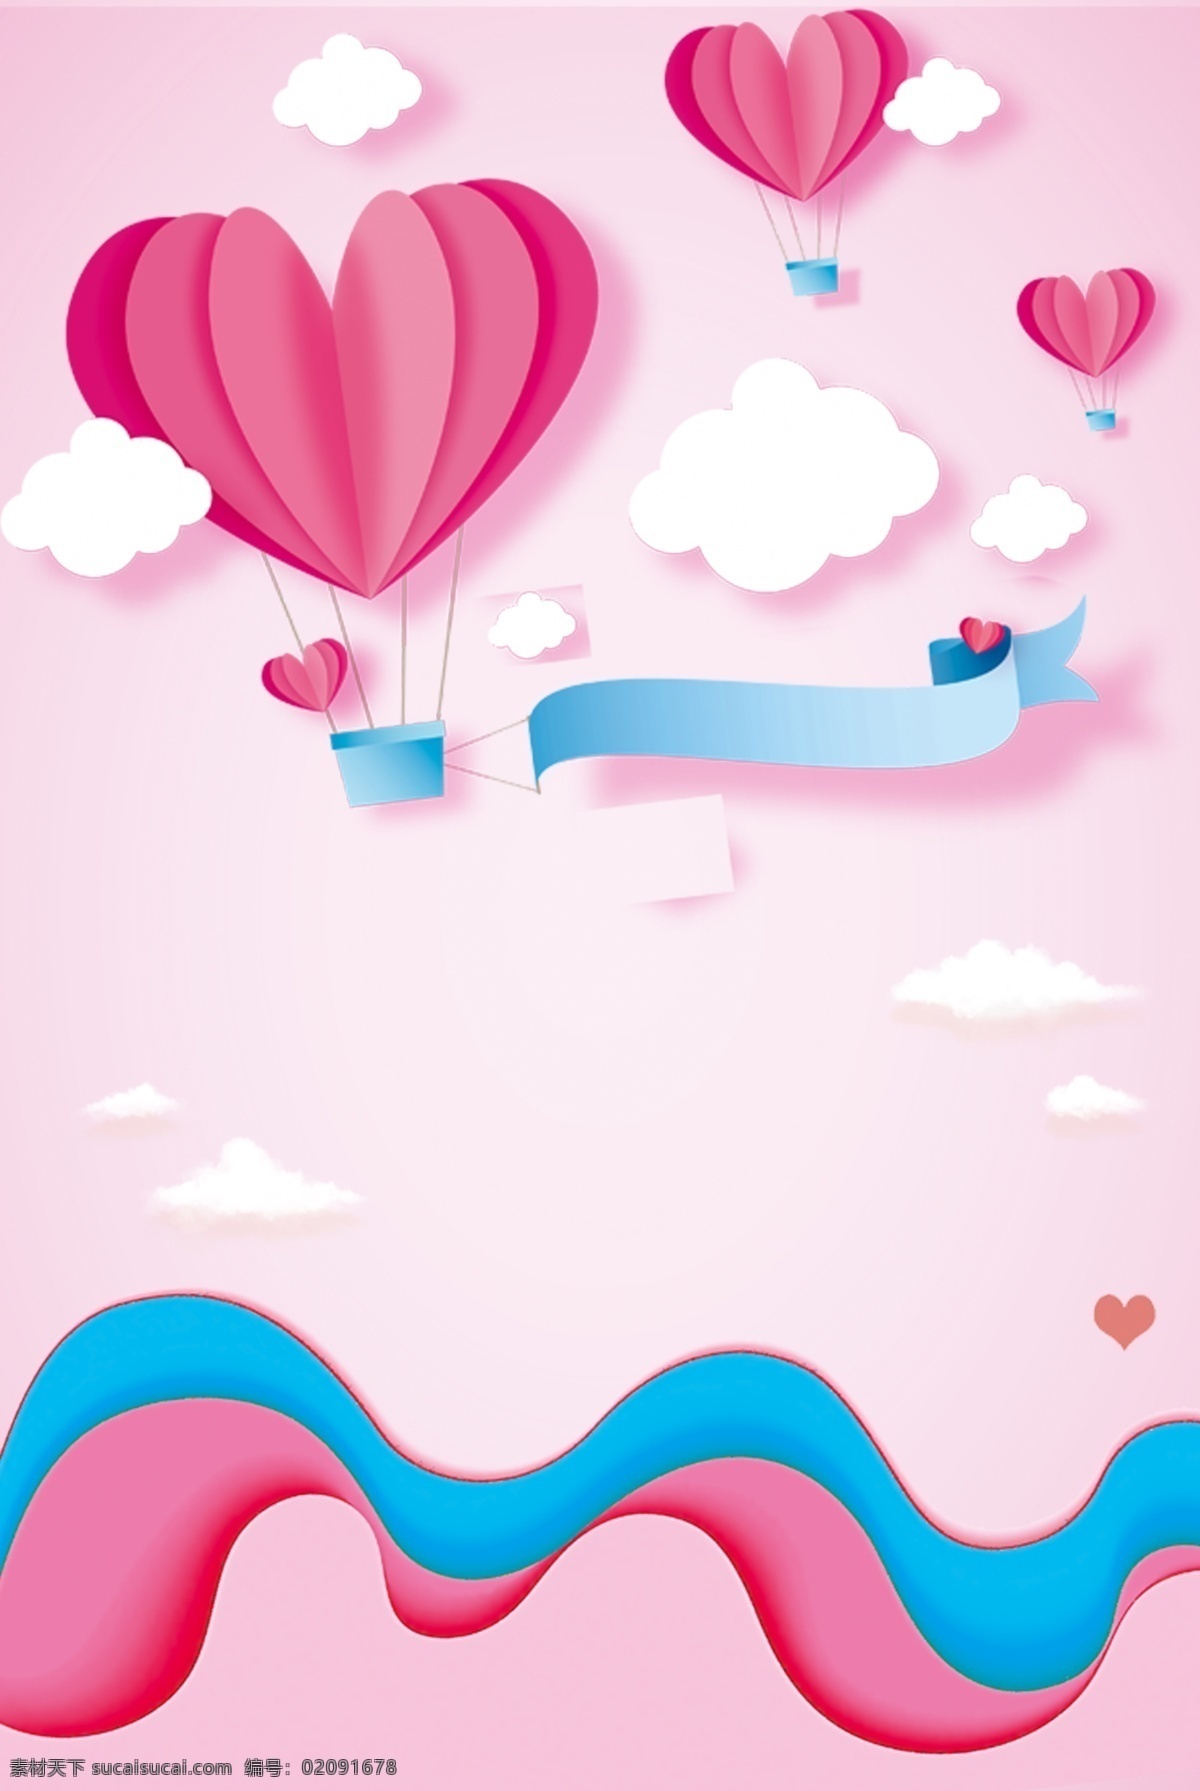 520 情人节 粉色 氢气球 海报 背景 白云 浪花 浪漫 清新 简约 psd分层 海报背景